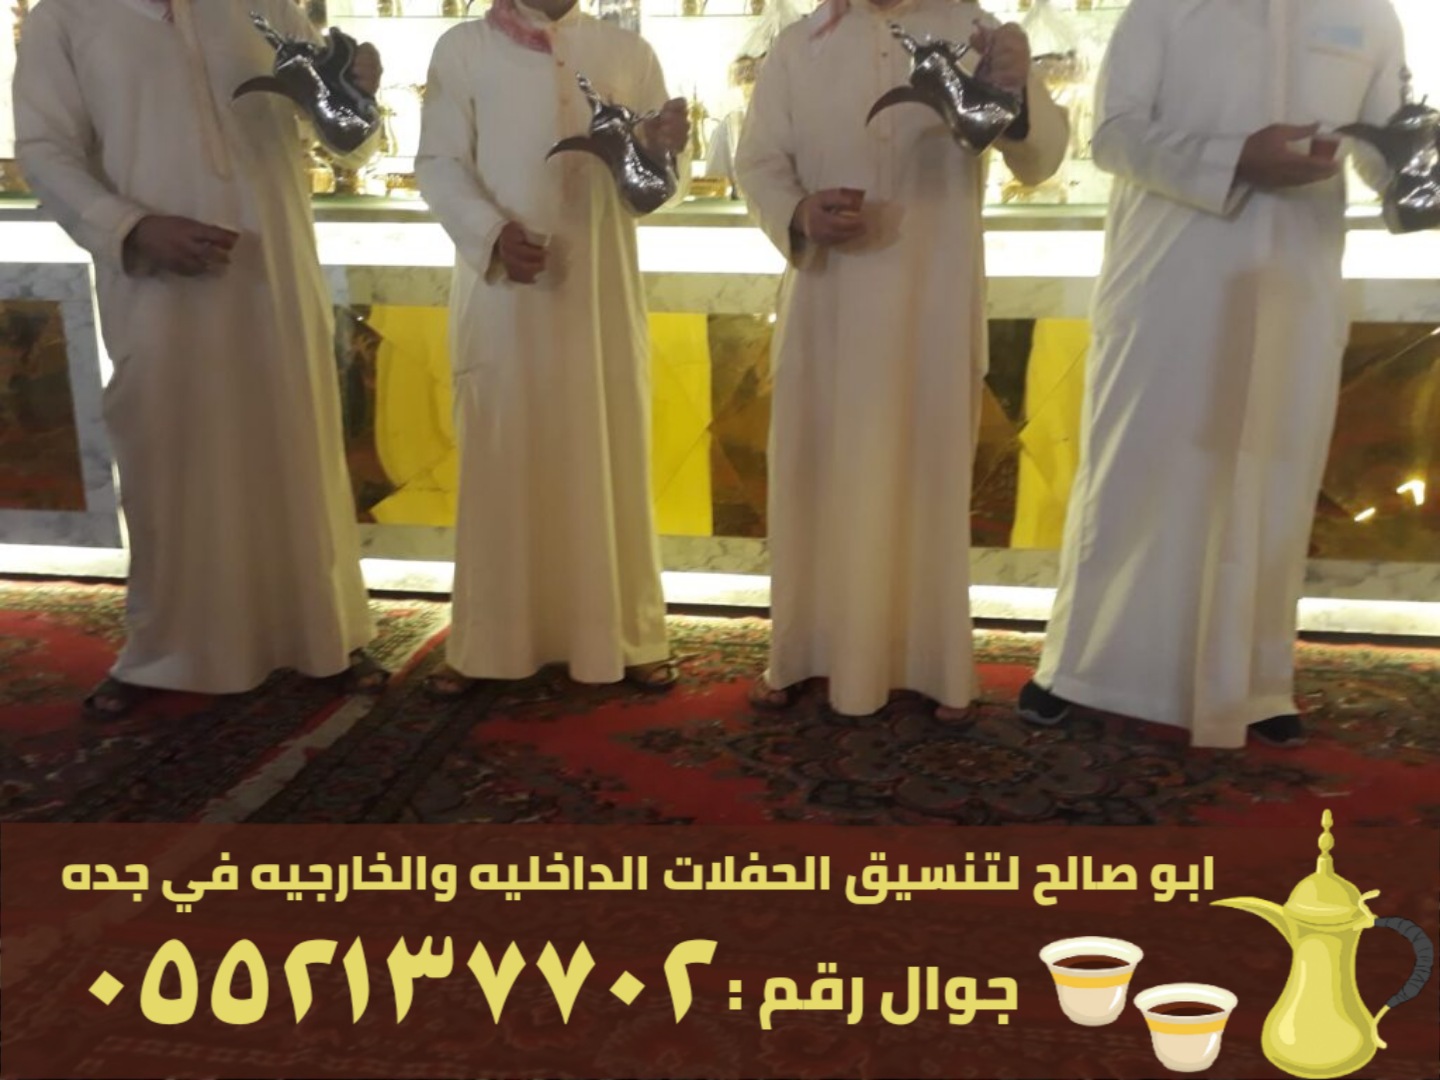 صبابين قهوة و قهوجيات في جدة, 0552137702 P_24661wgne1